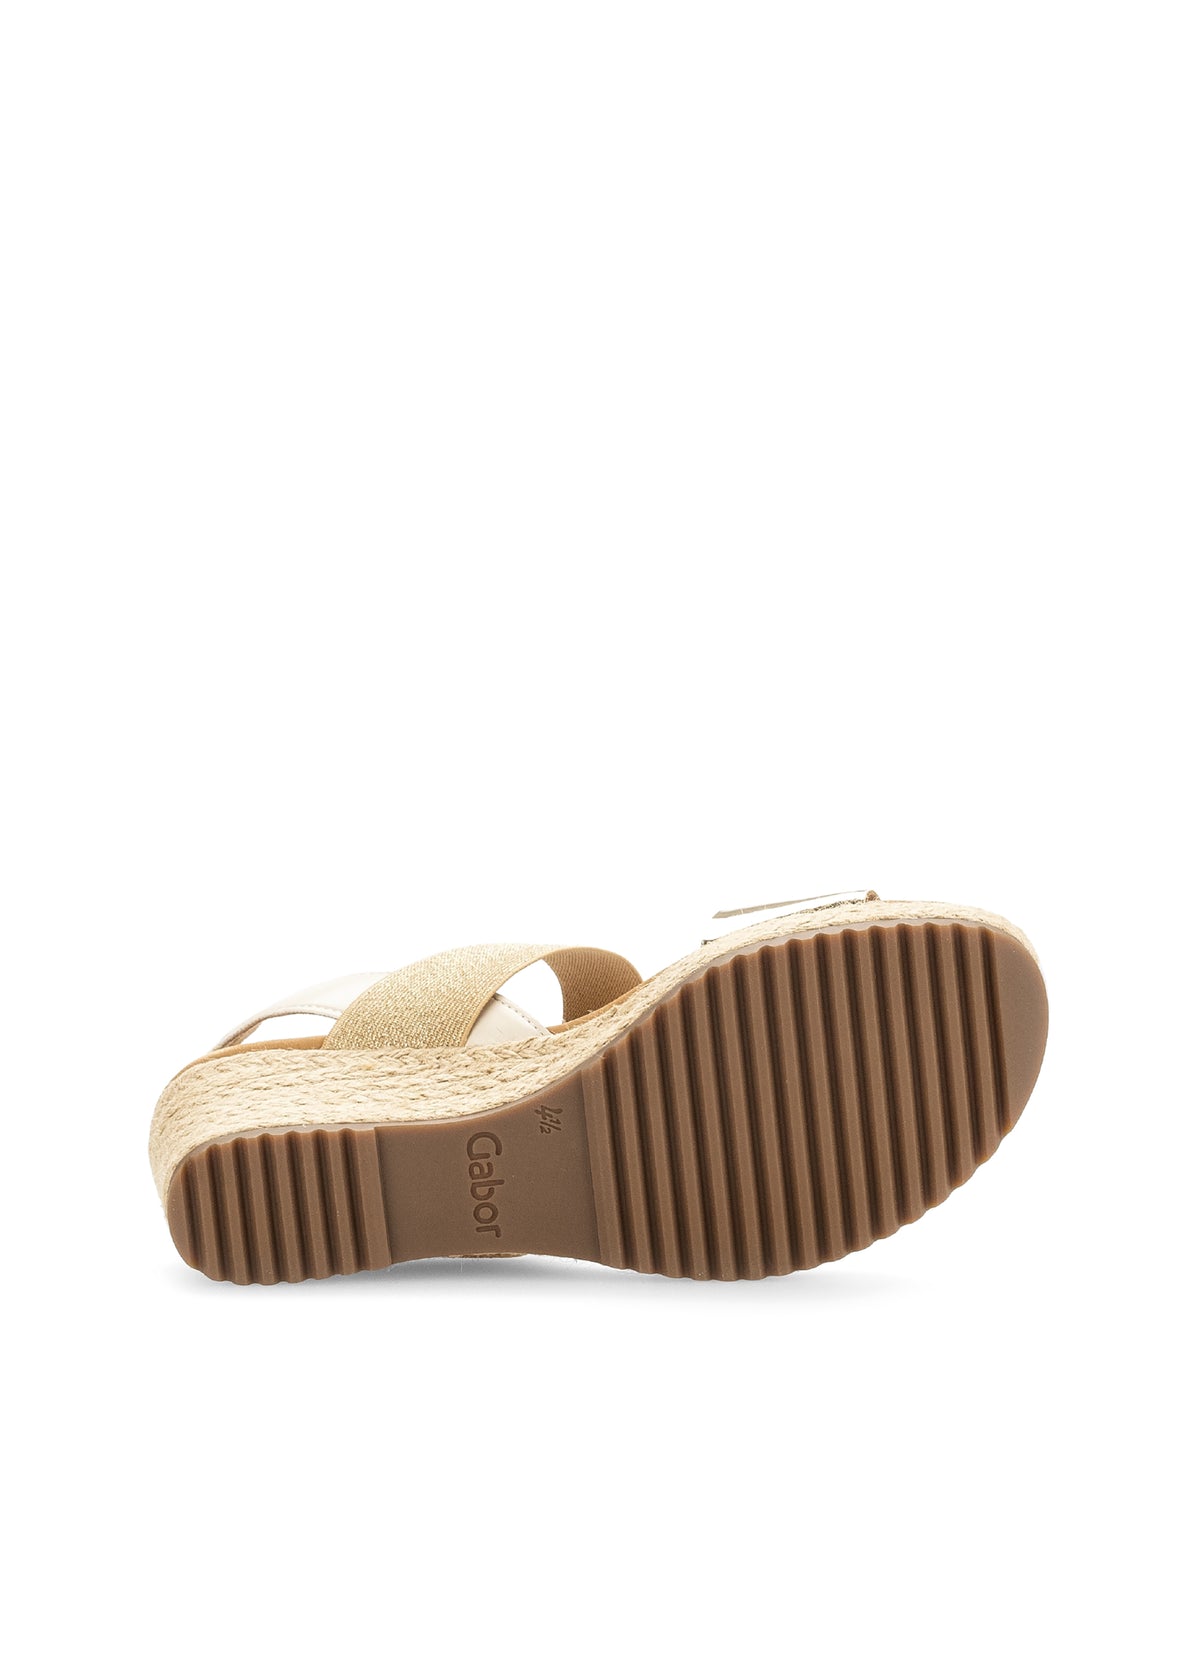 Sandaler med kilklack - glänsande guld och beige toner